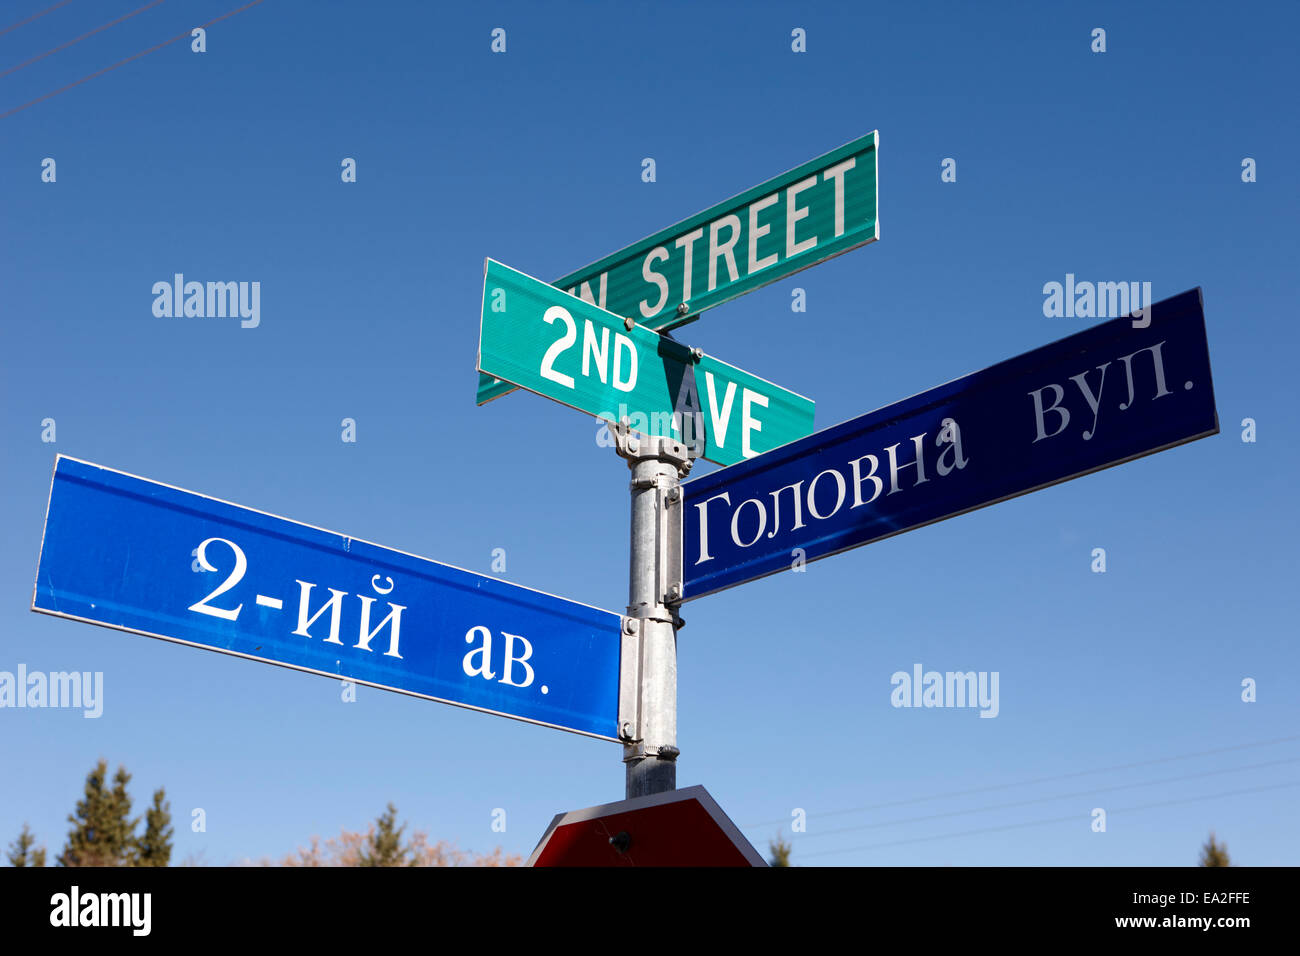 zweisprachig Englisch Russisch Ukrainisch Kyrillisch Straße Hafford Saskatchewan Kanada Stockfoto